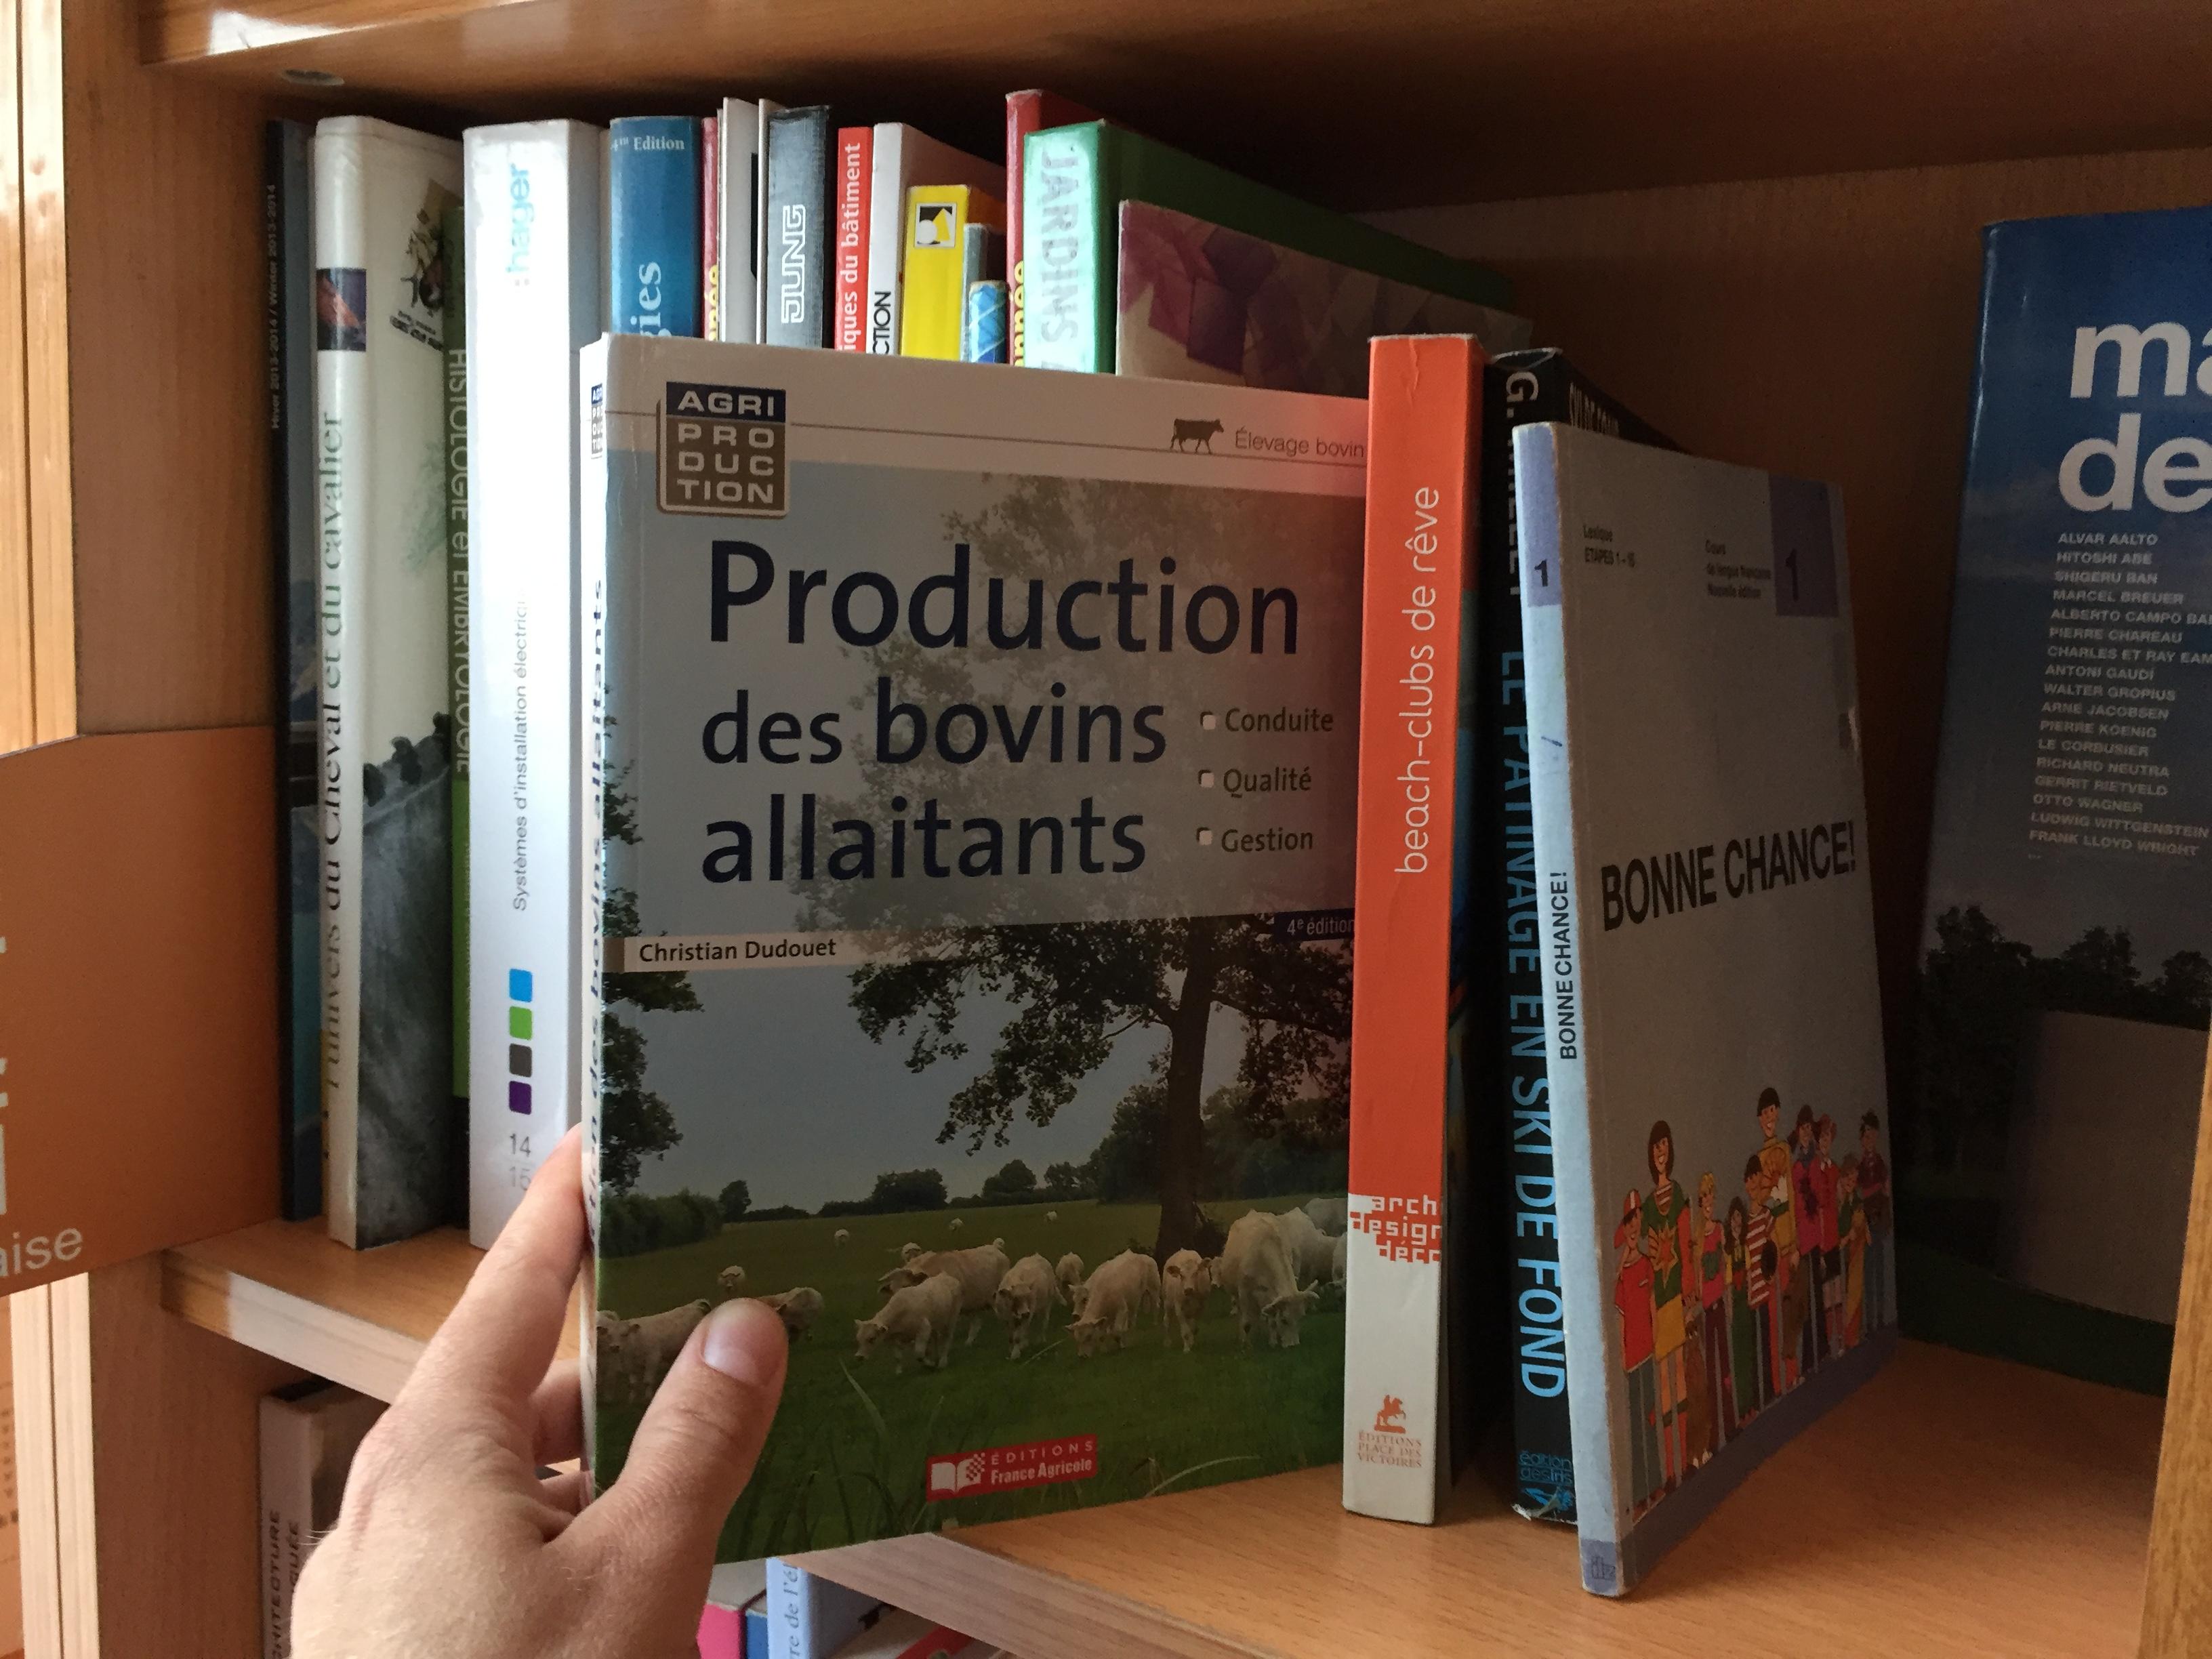 Parmi les livre en français de la bibliothèque, "Production des bovins allaitants". [Raphaël Grand]